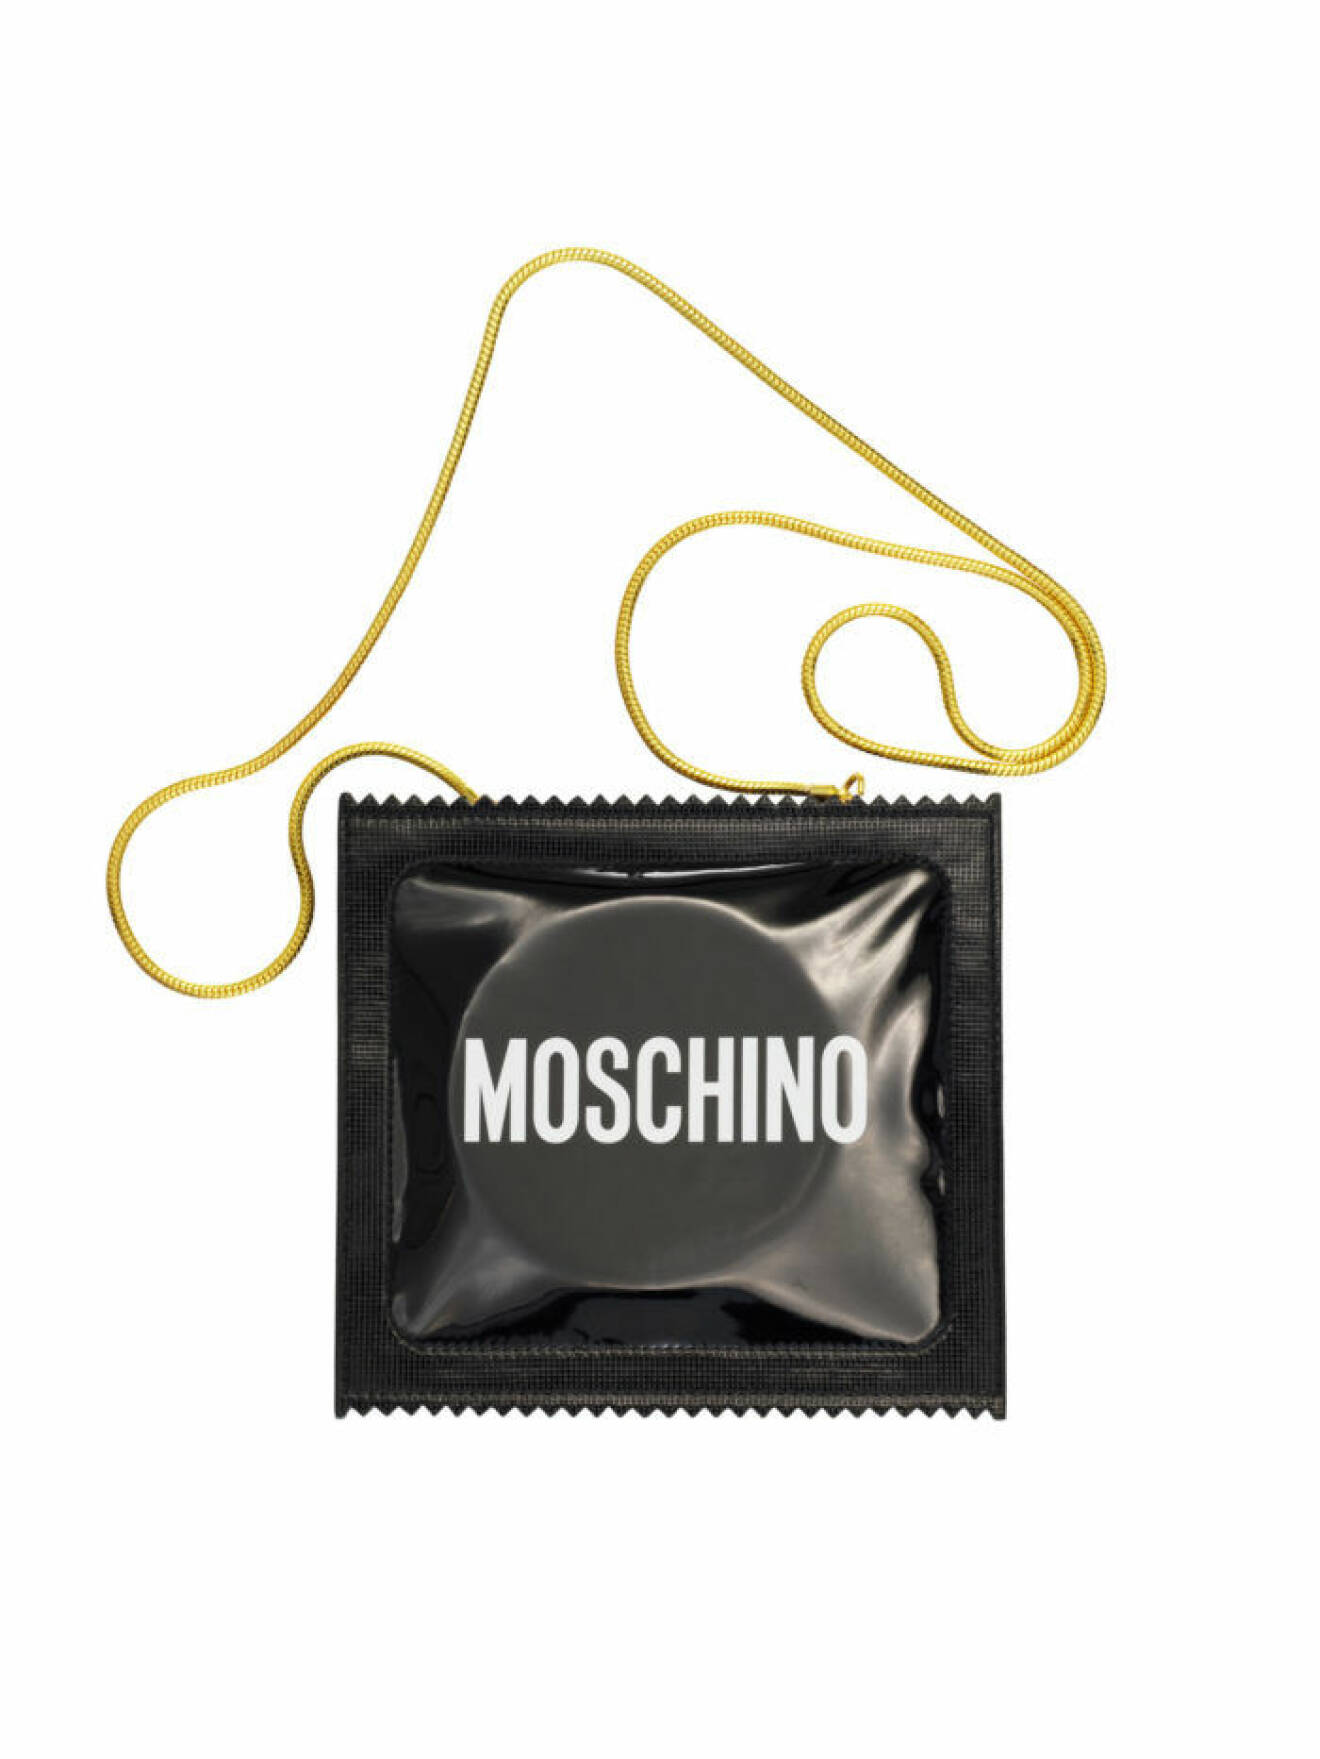 Svart väska i form av kondomapaket Moschino [tv] H&M